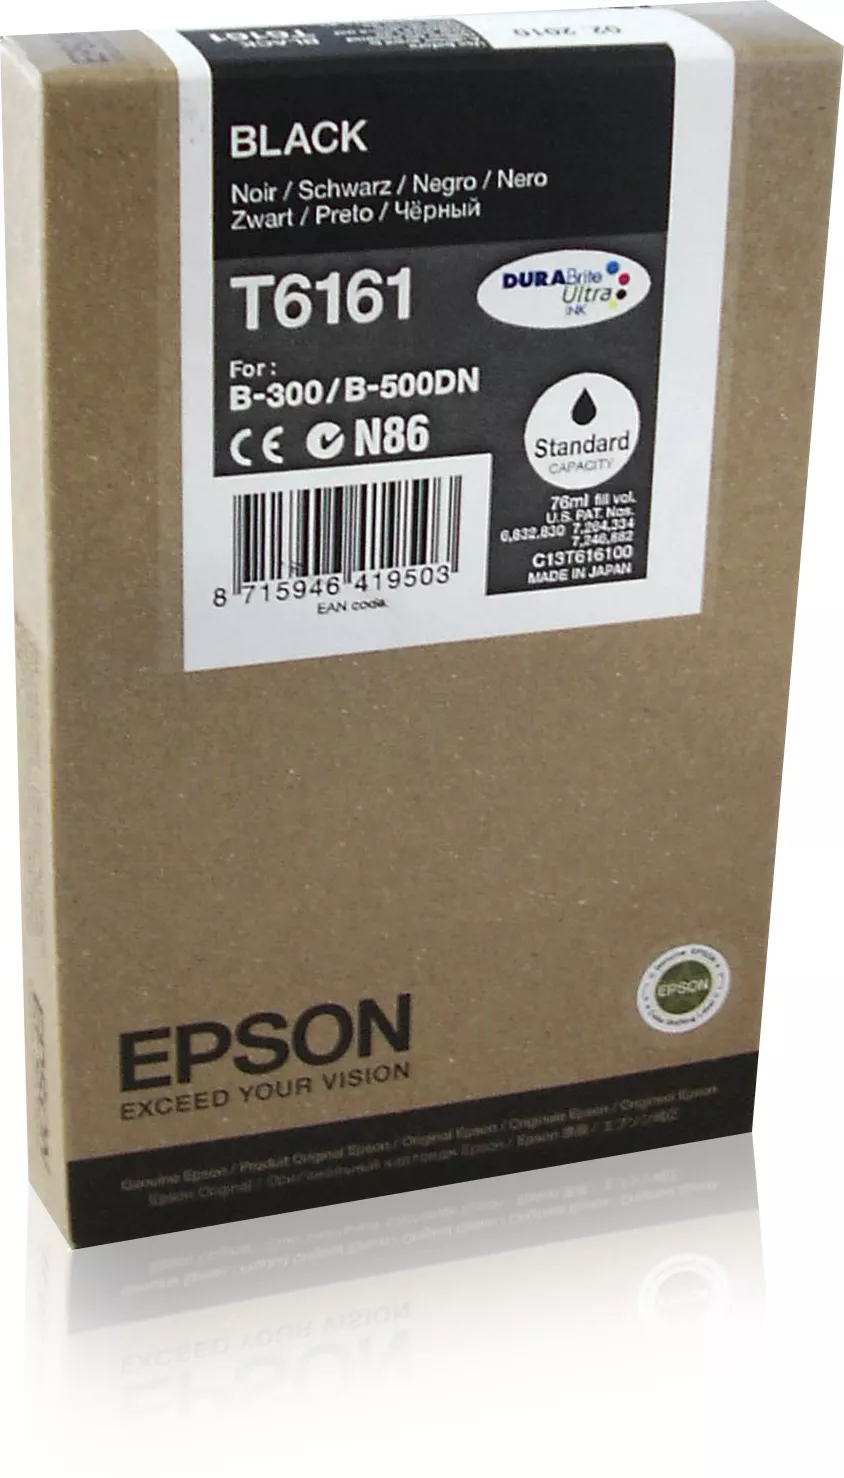 Achat EPSON T6161 cartouche de encre noir capacité standard 76ml - 8715946419503